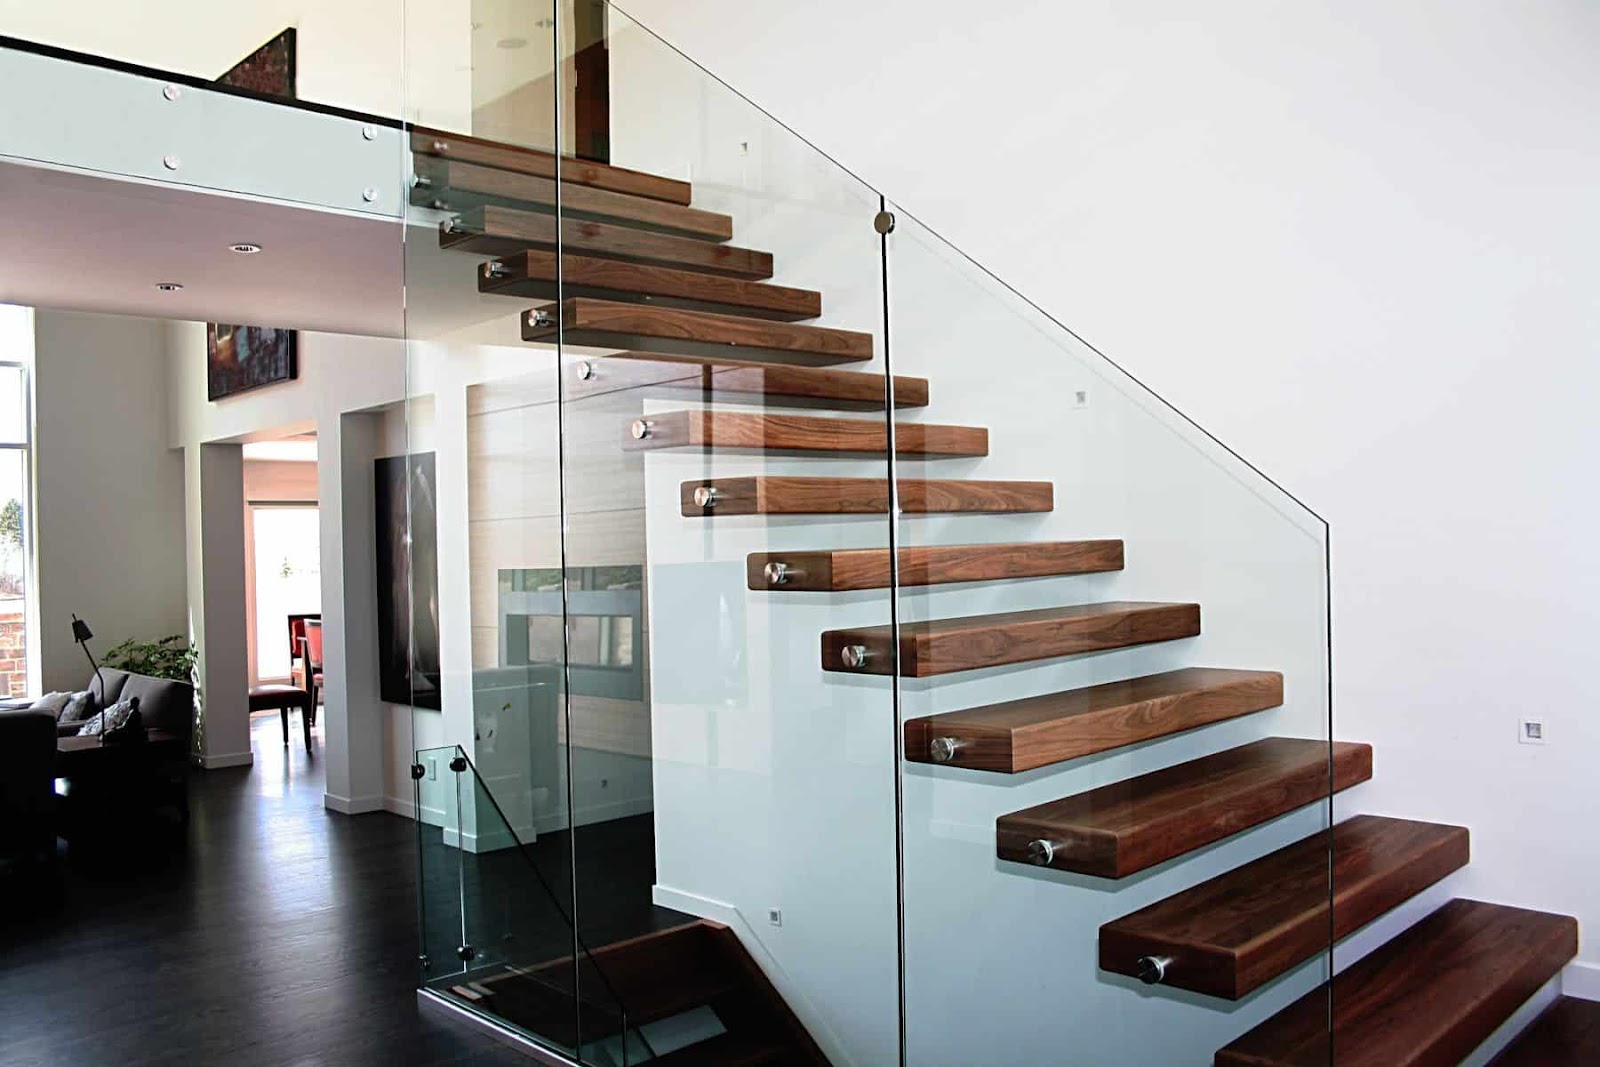 Cầu thang có khe hở ảnh hưởng đến quá trình vận khí trong căn nhà